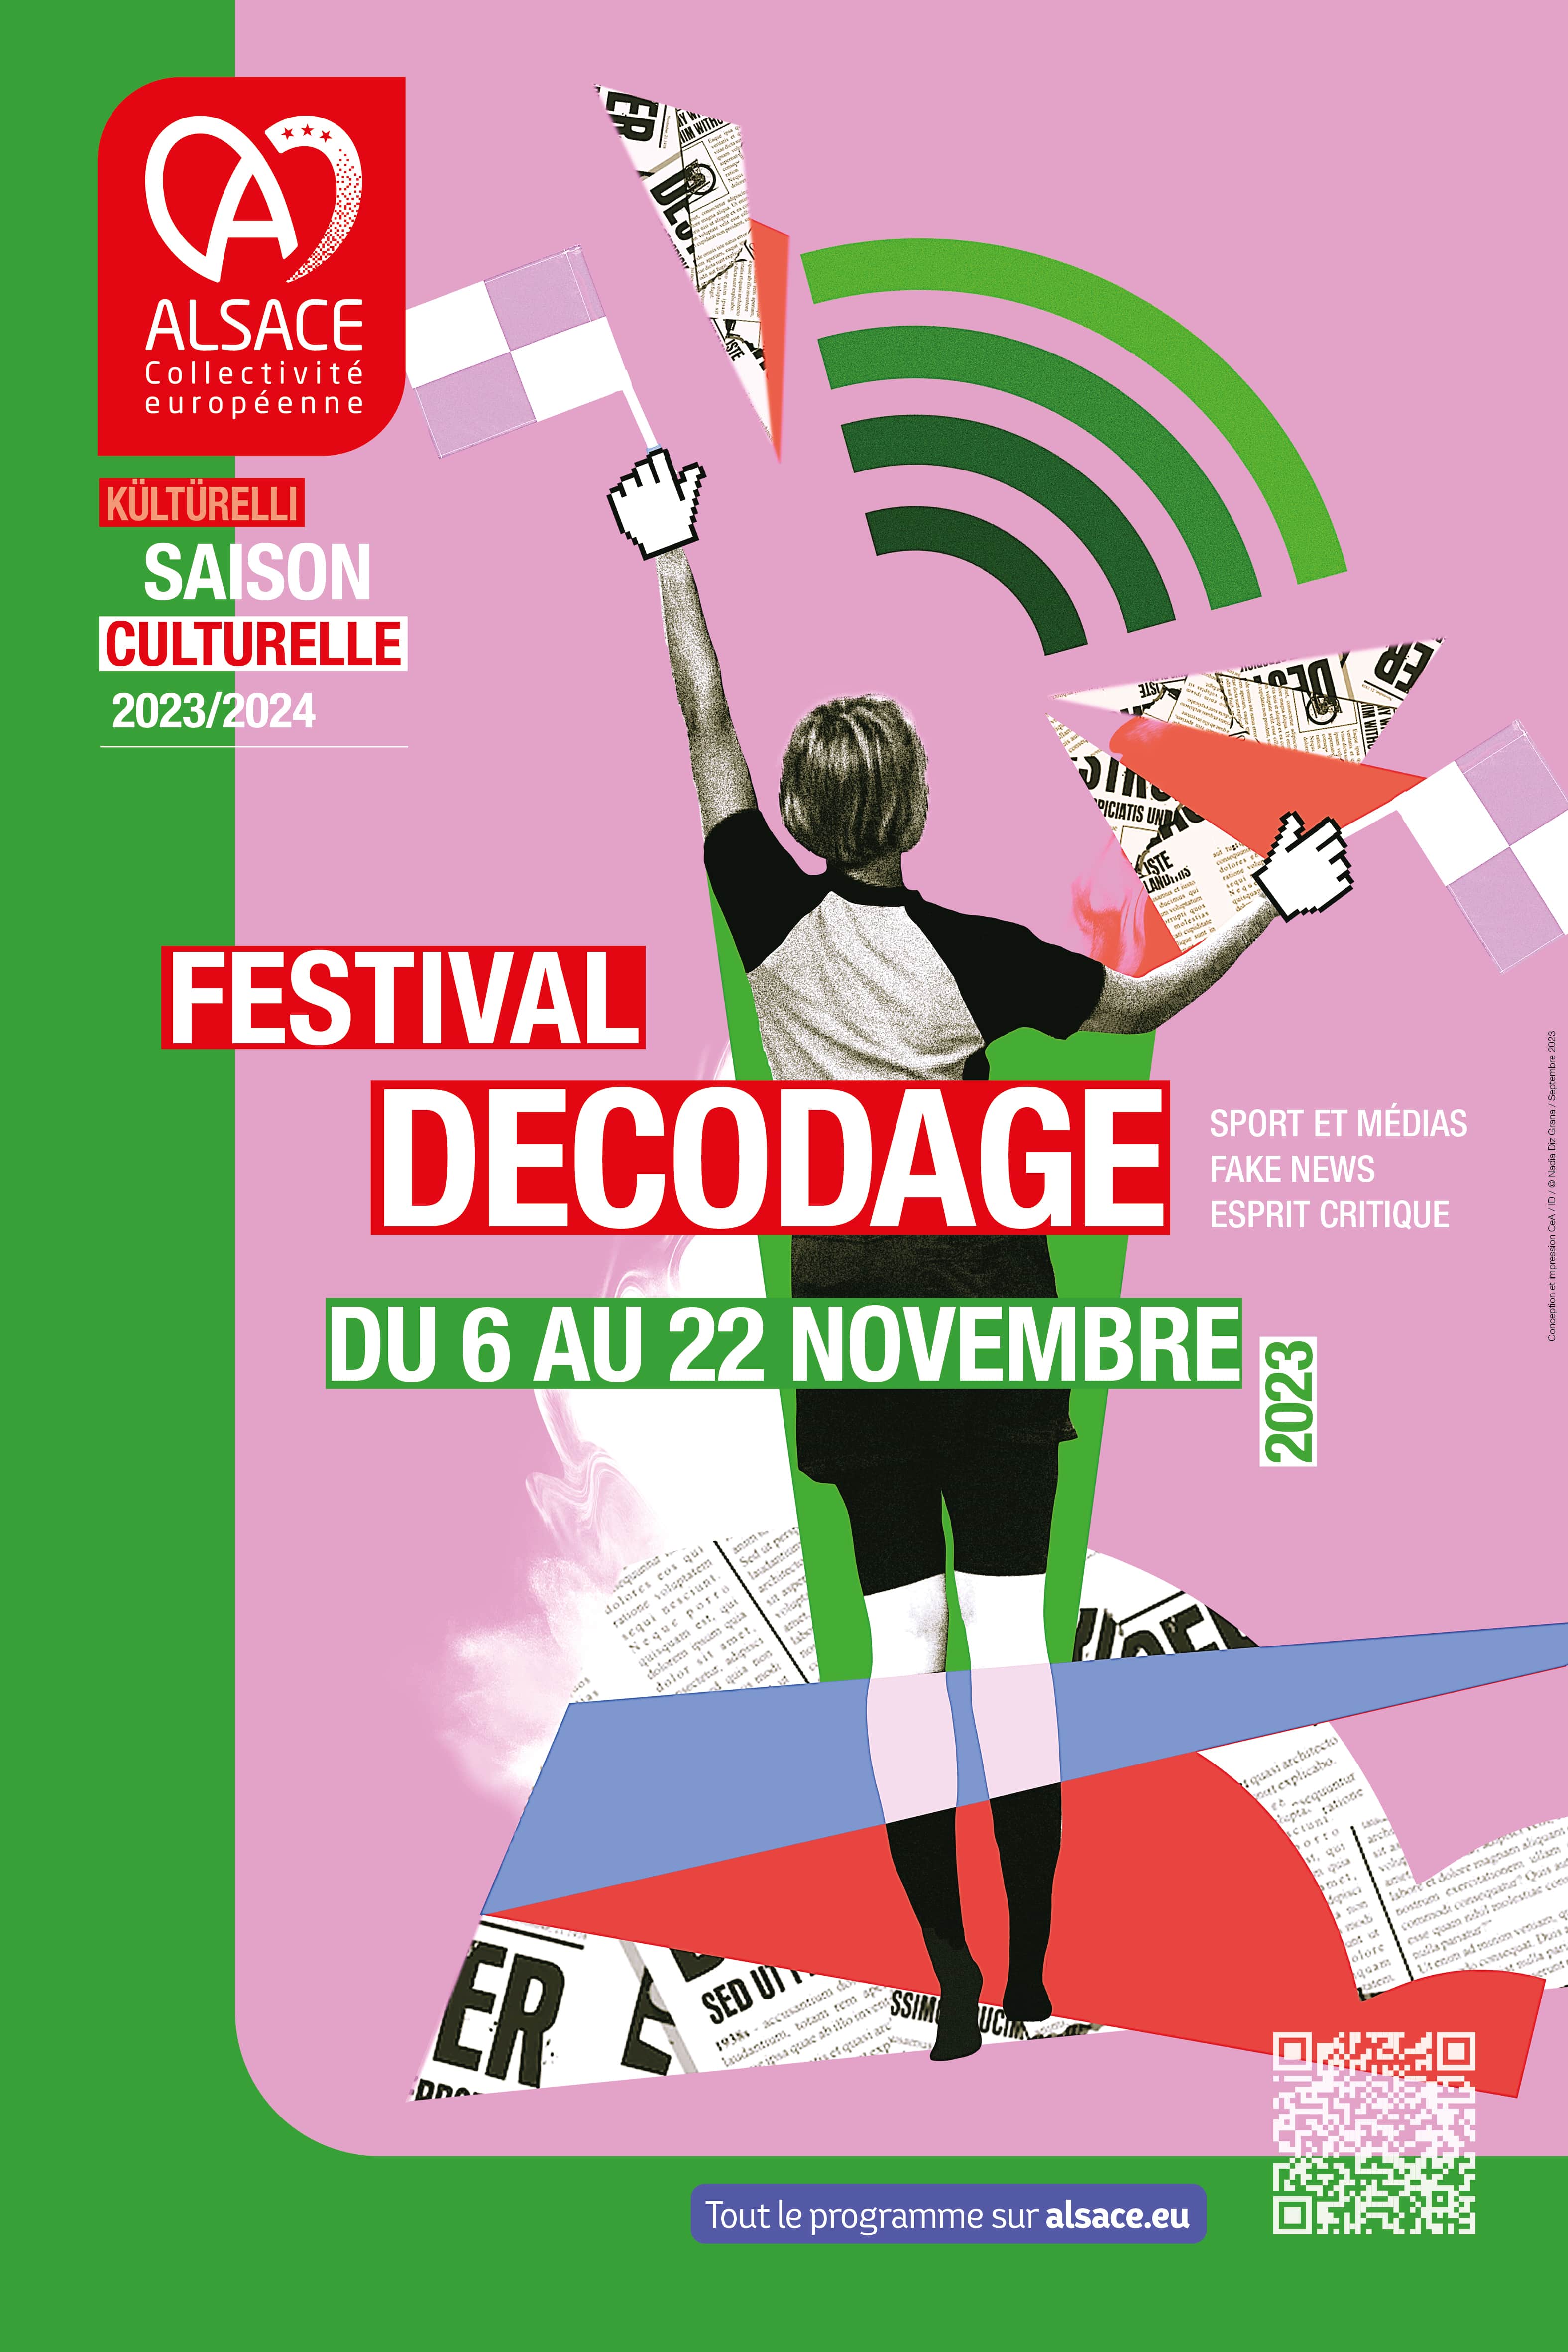 Affiche du festival décodage, une sportive de dos en technique découpage collage sur un fond rose et vert